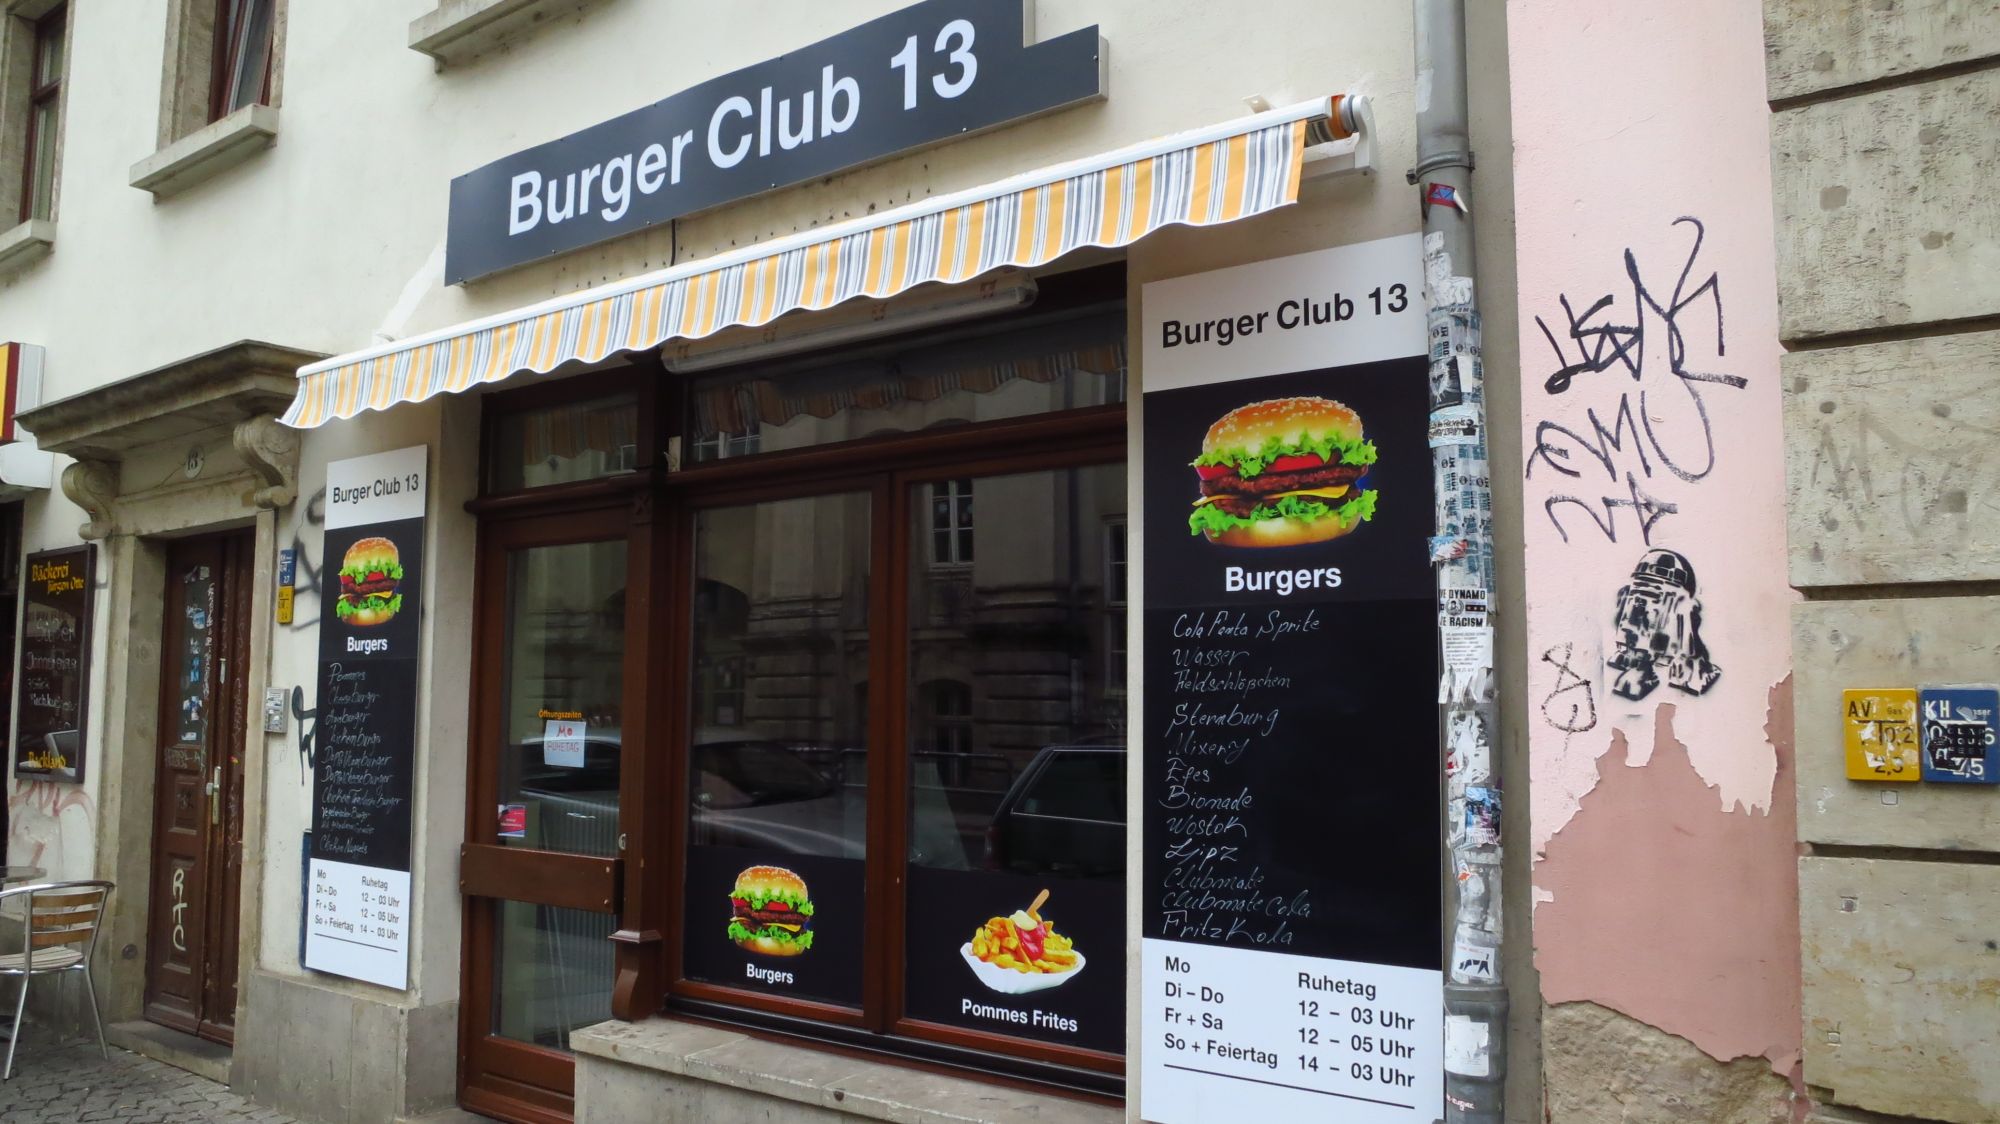 Burgerclub 13 in der Görlitzer Straße 13